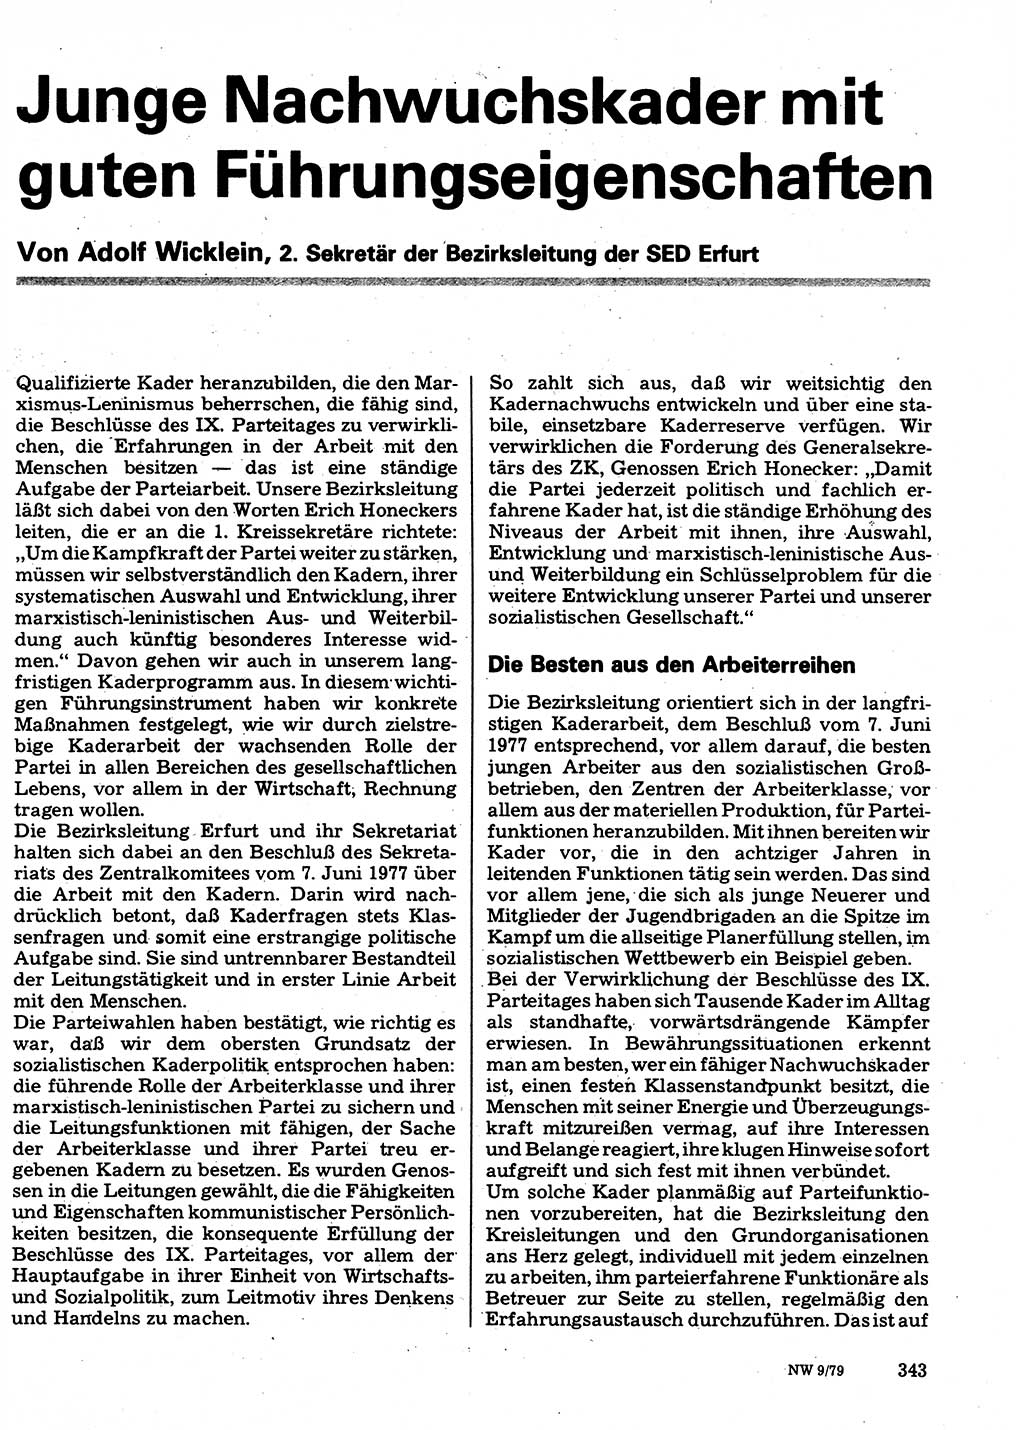 Neuer Weg (NW), Organ des Zentralkomitees (ZK) der SED (Sozialistische Einheitspartei Deutschlands) für Fragen des Parteilebens, 34. Jahrgang [Deutsche Demokratische Republik (DDR)] 1979, Seite 343 (NW ZK SED DDR 1979, S. 343)